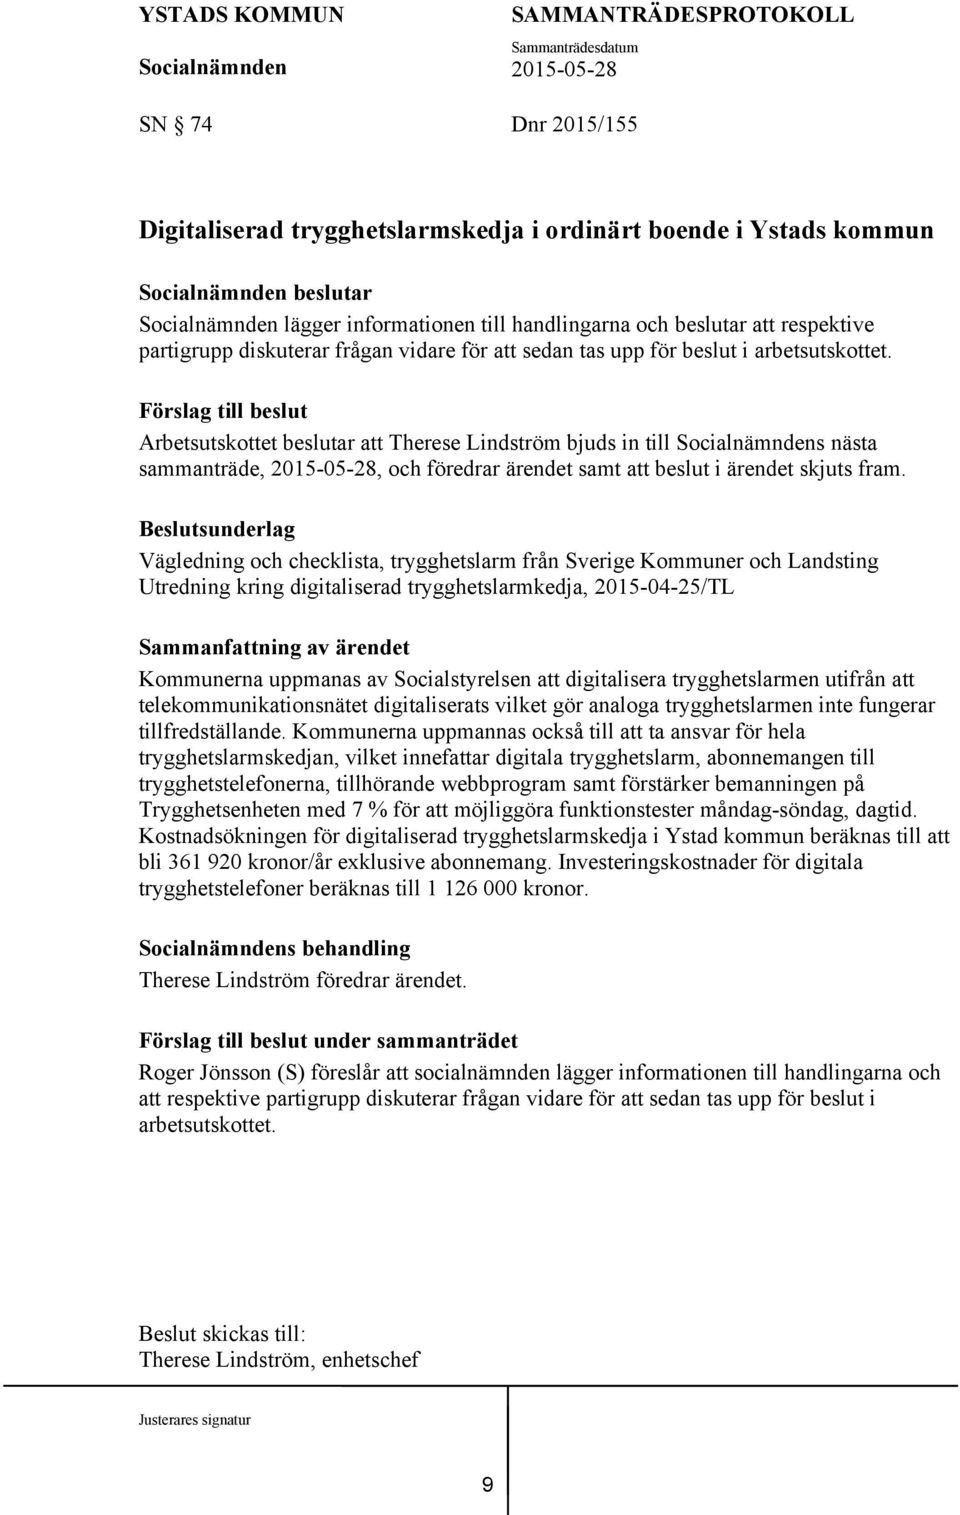 Vägledning och checklista, trygghetslarm från Sverige Kommuner och Landsting Utredning kring digitaliserad trygghetslarmkedja, 2015-04-25/TL Kommunerna uppmanas av Socialstyrelsen att digitalisera